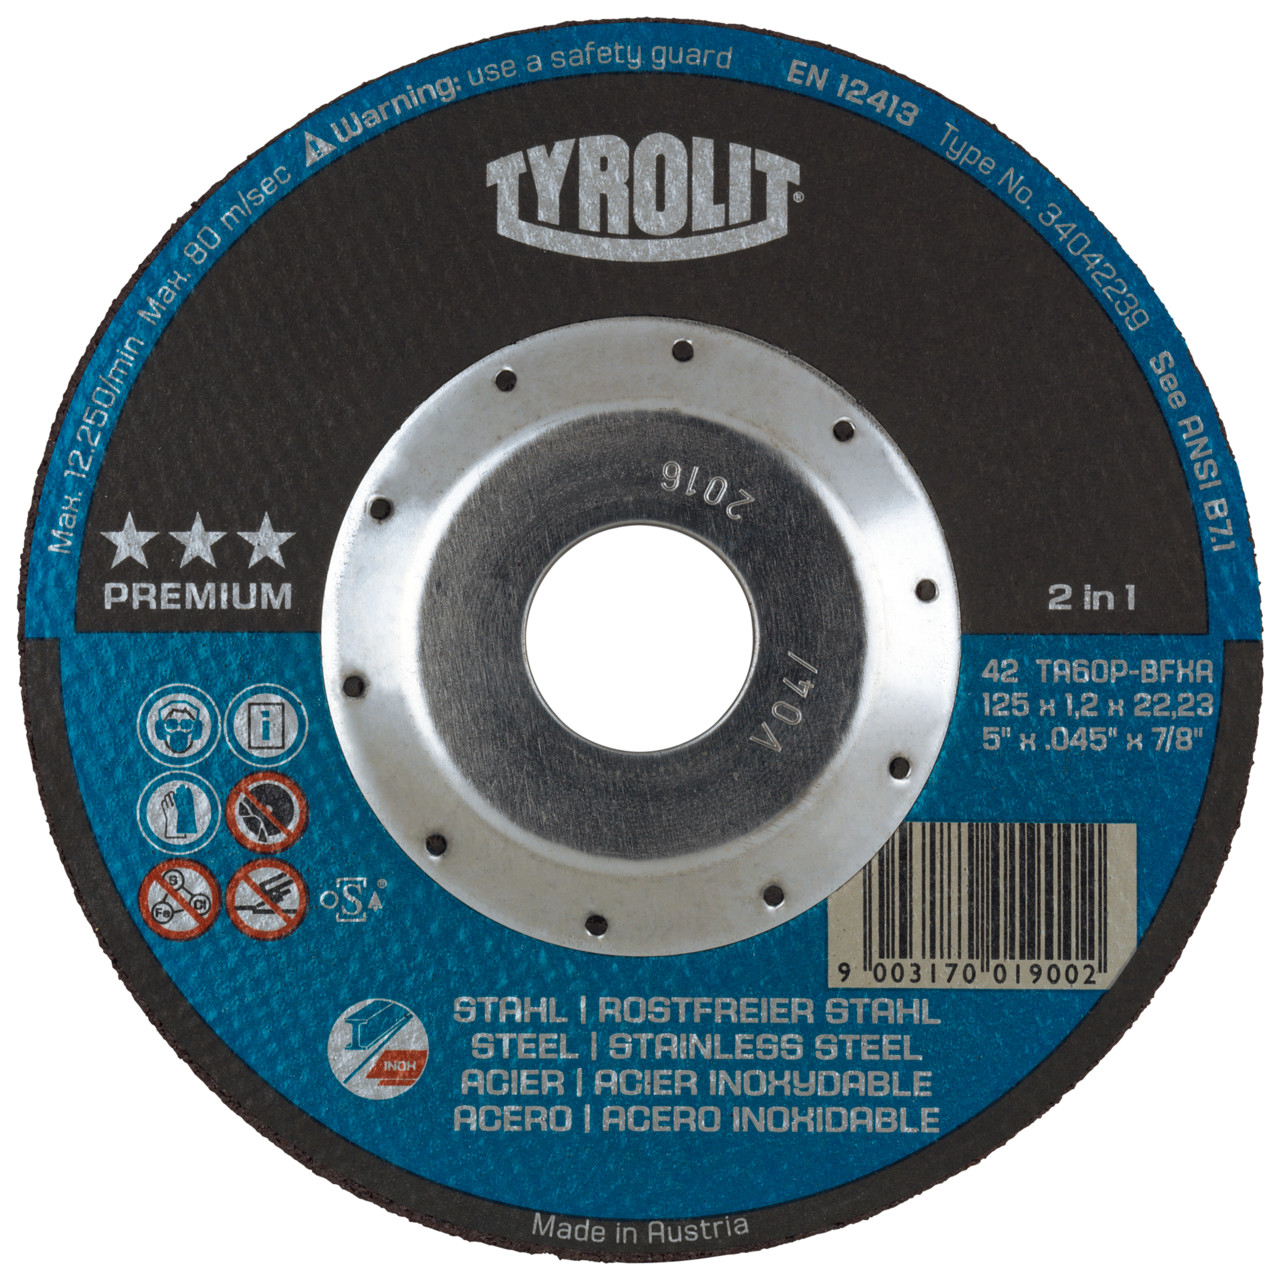 Tyrolit Discos de corte DxUxH 125x1,2x22,23 Discos de corte superfinos para acero y acero inoxidable, forma: 42 - versión offset, Art. 34472852